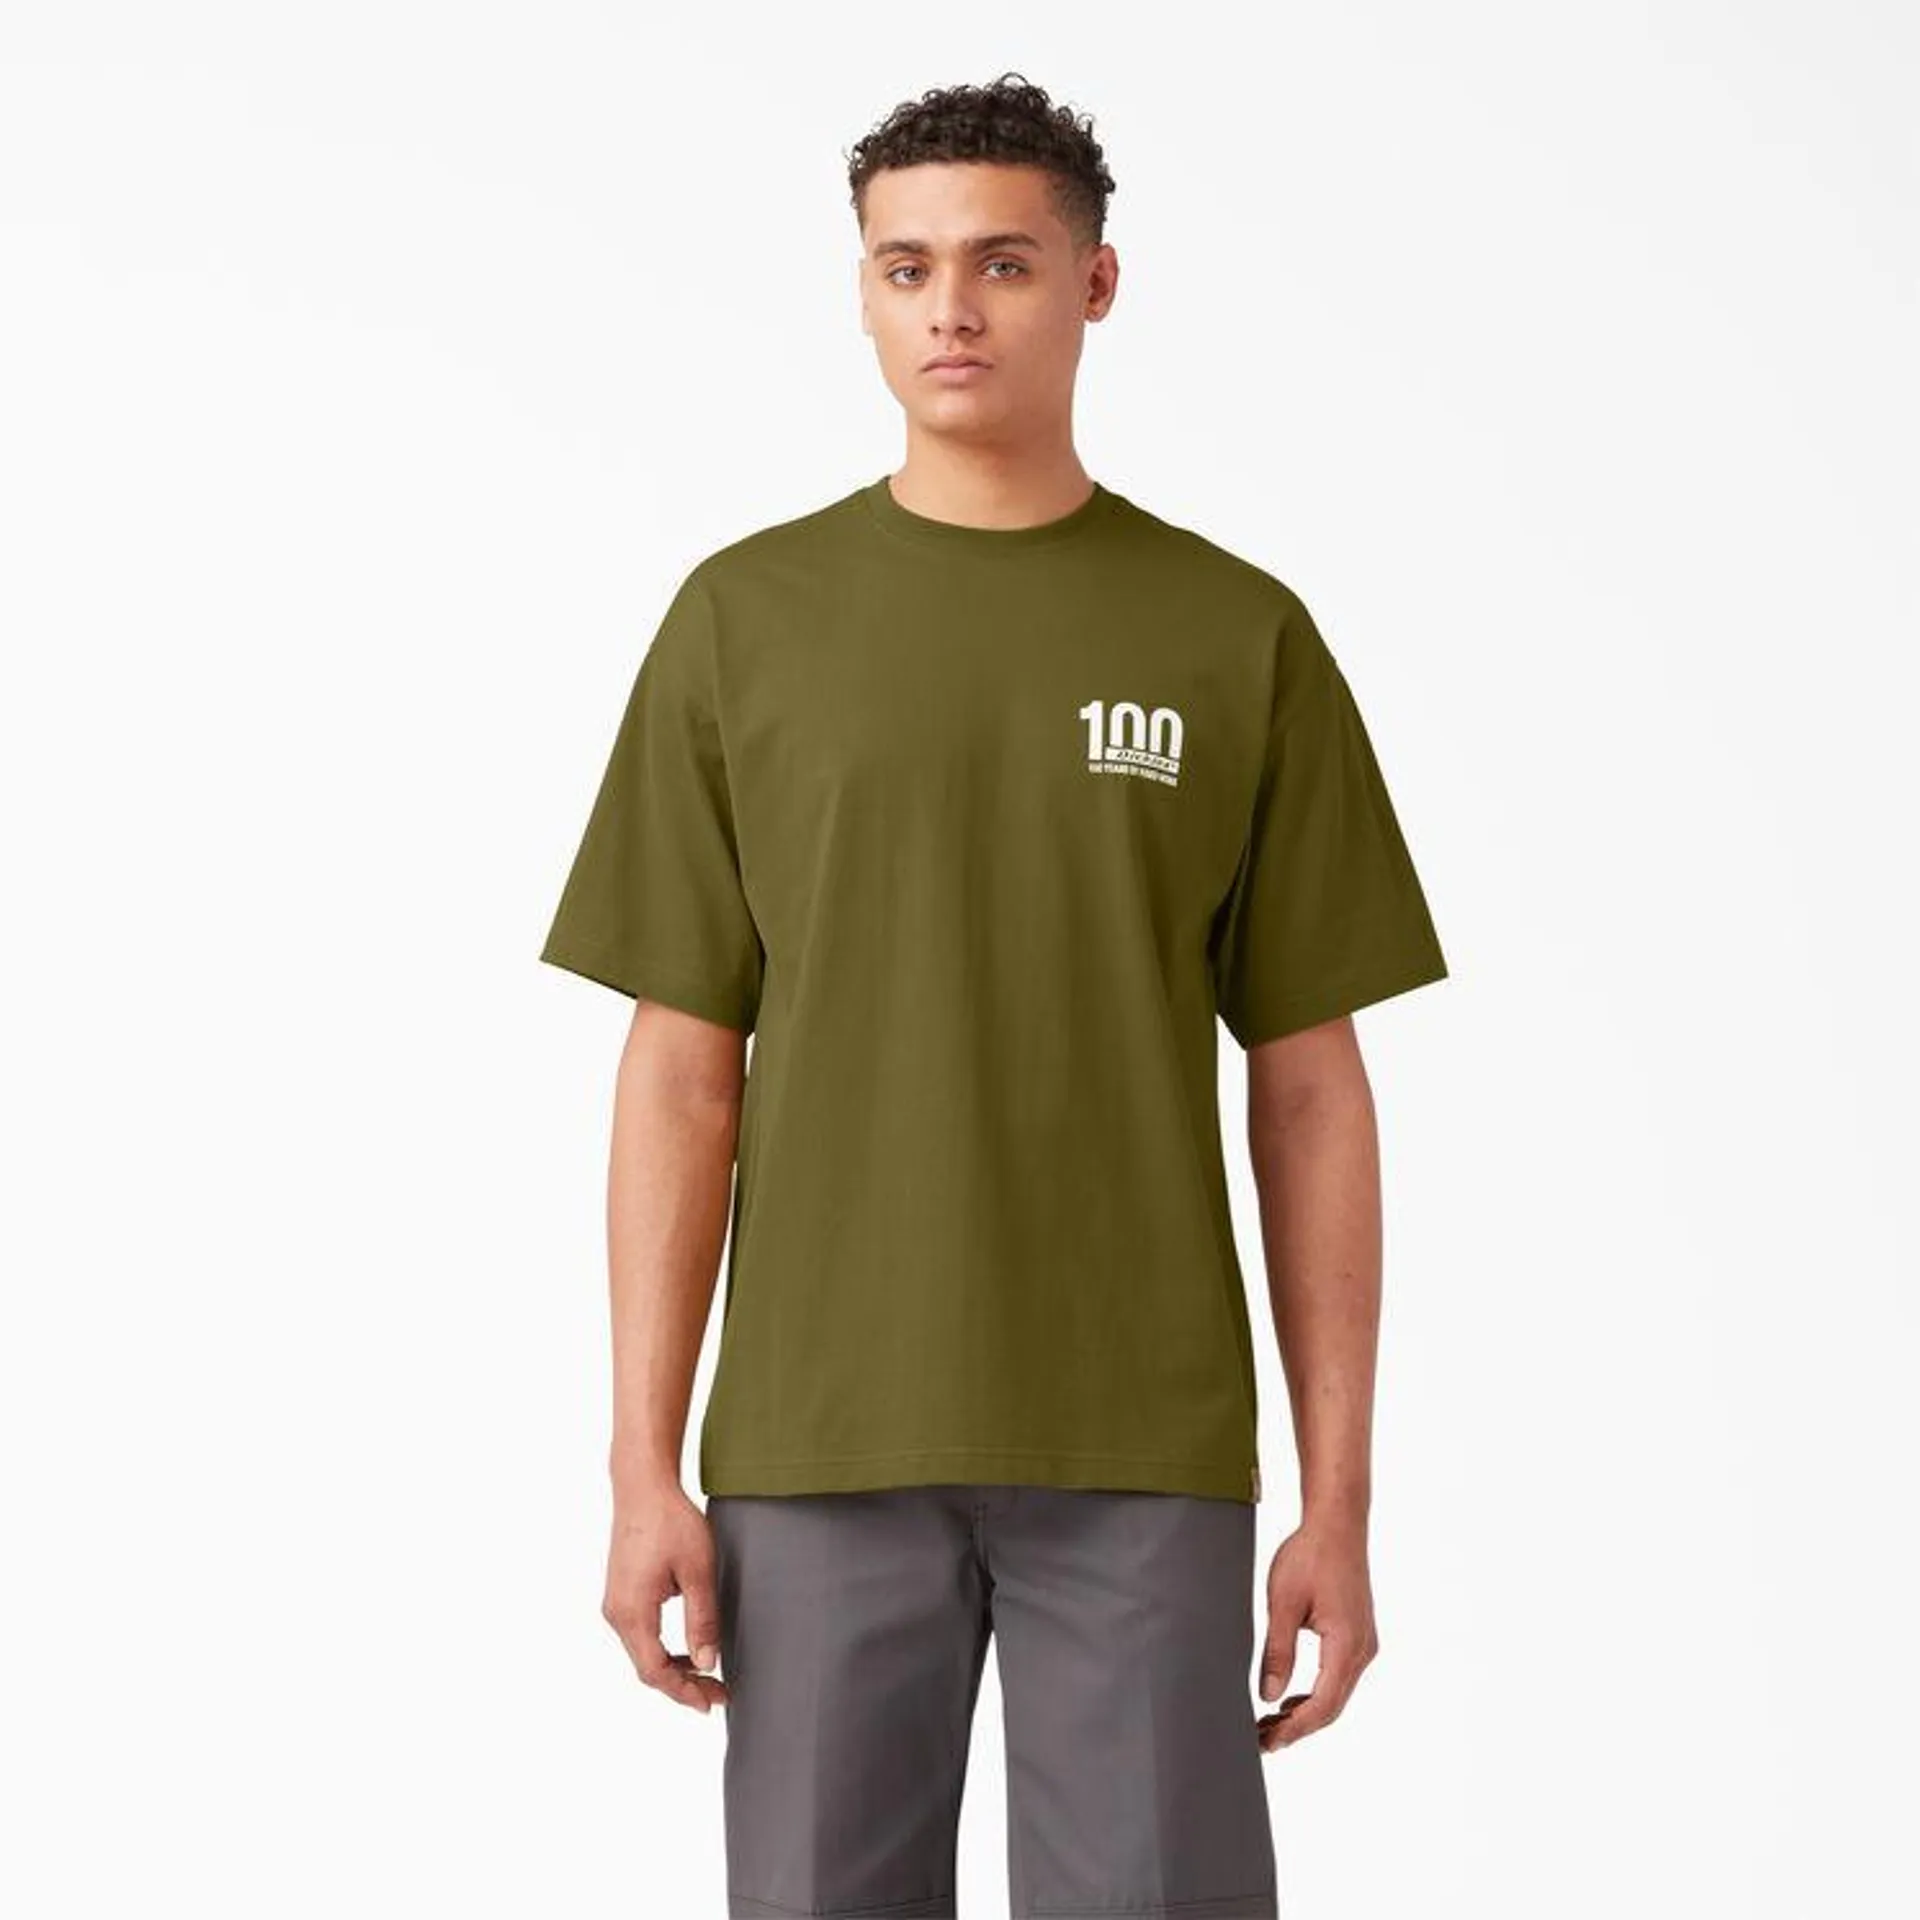 100 Year Milestone Graphic T-Shirt, Green Moss